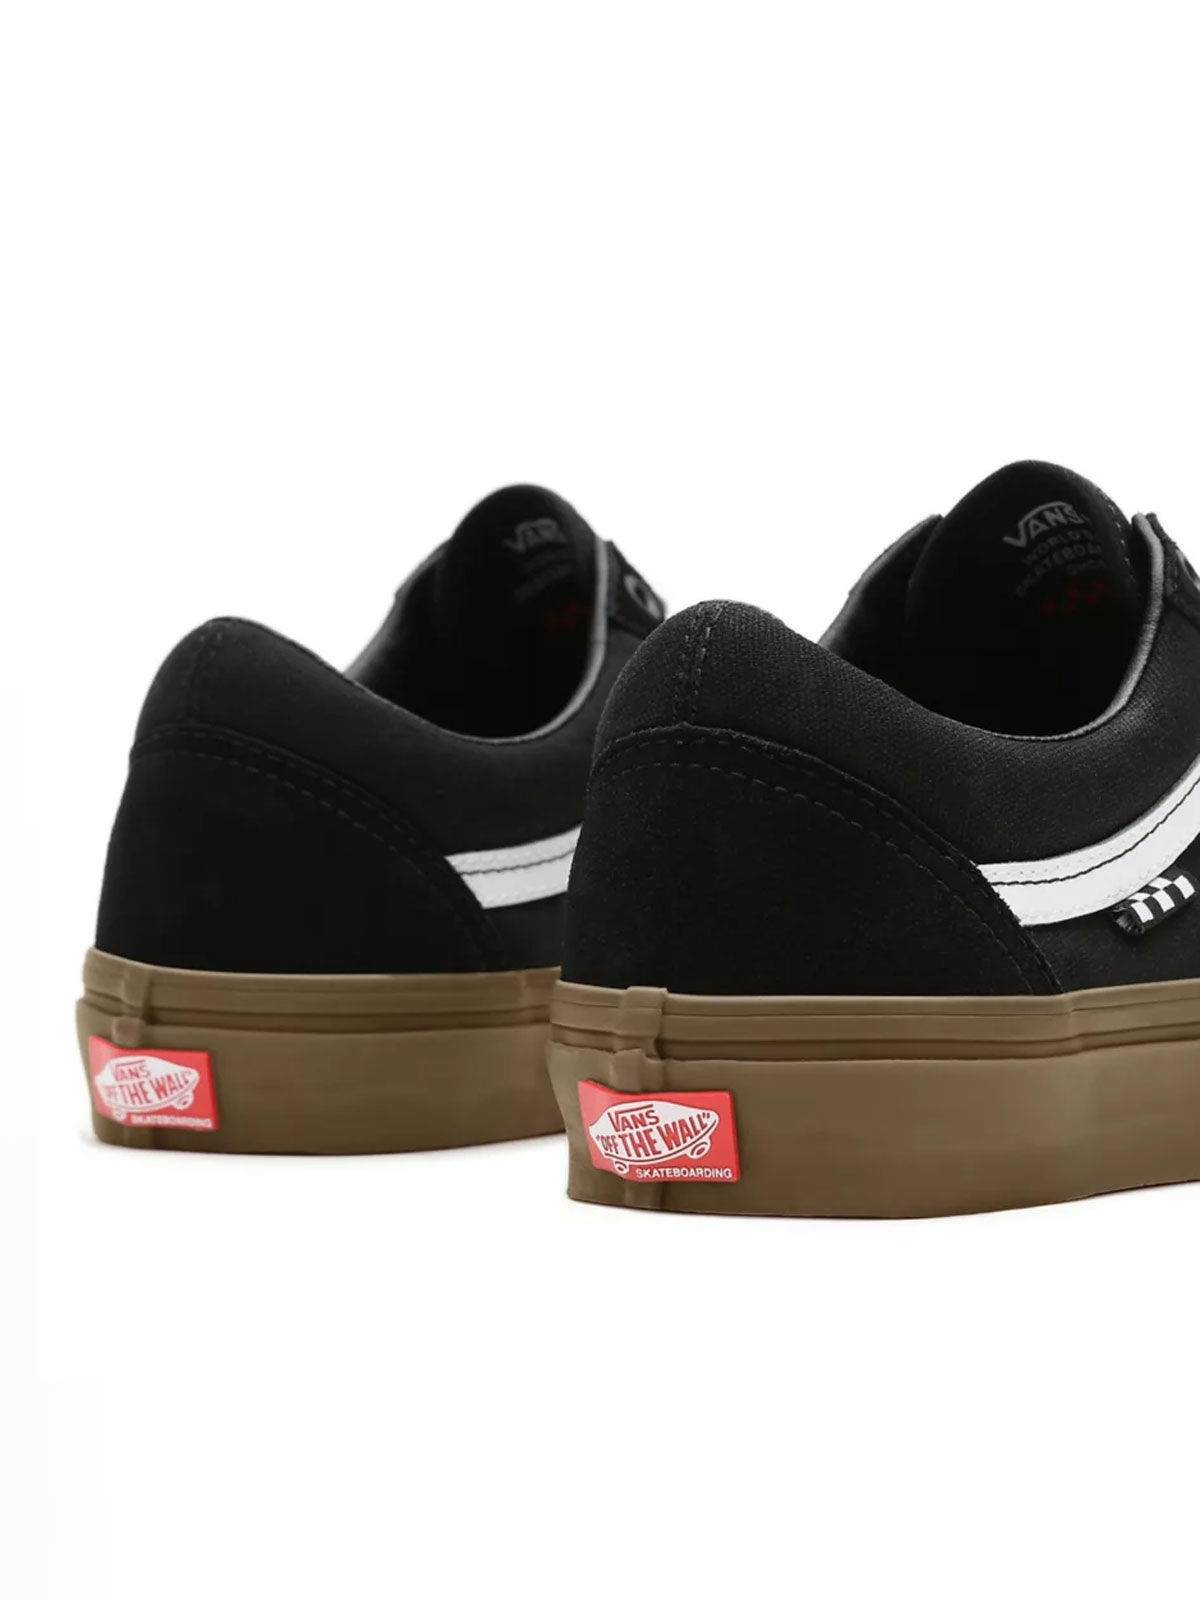 Vans Skate Old Skool Shoes Black/Gum 4